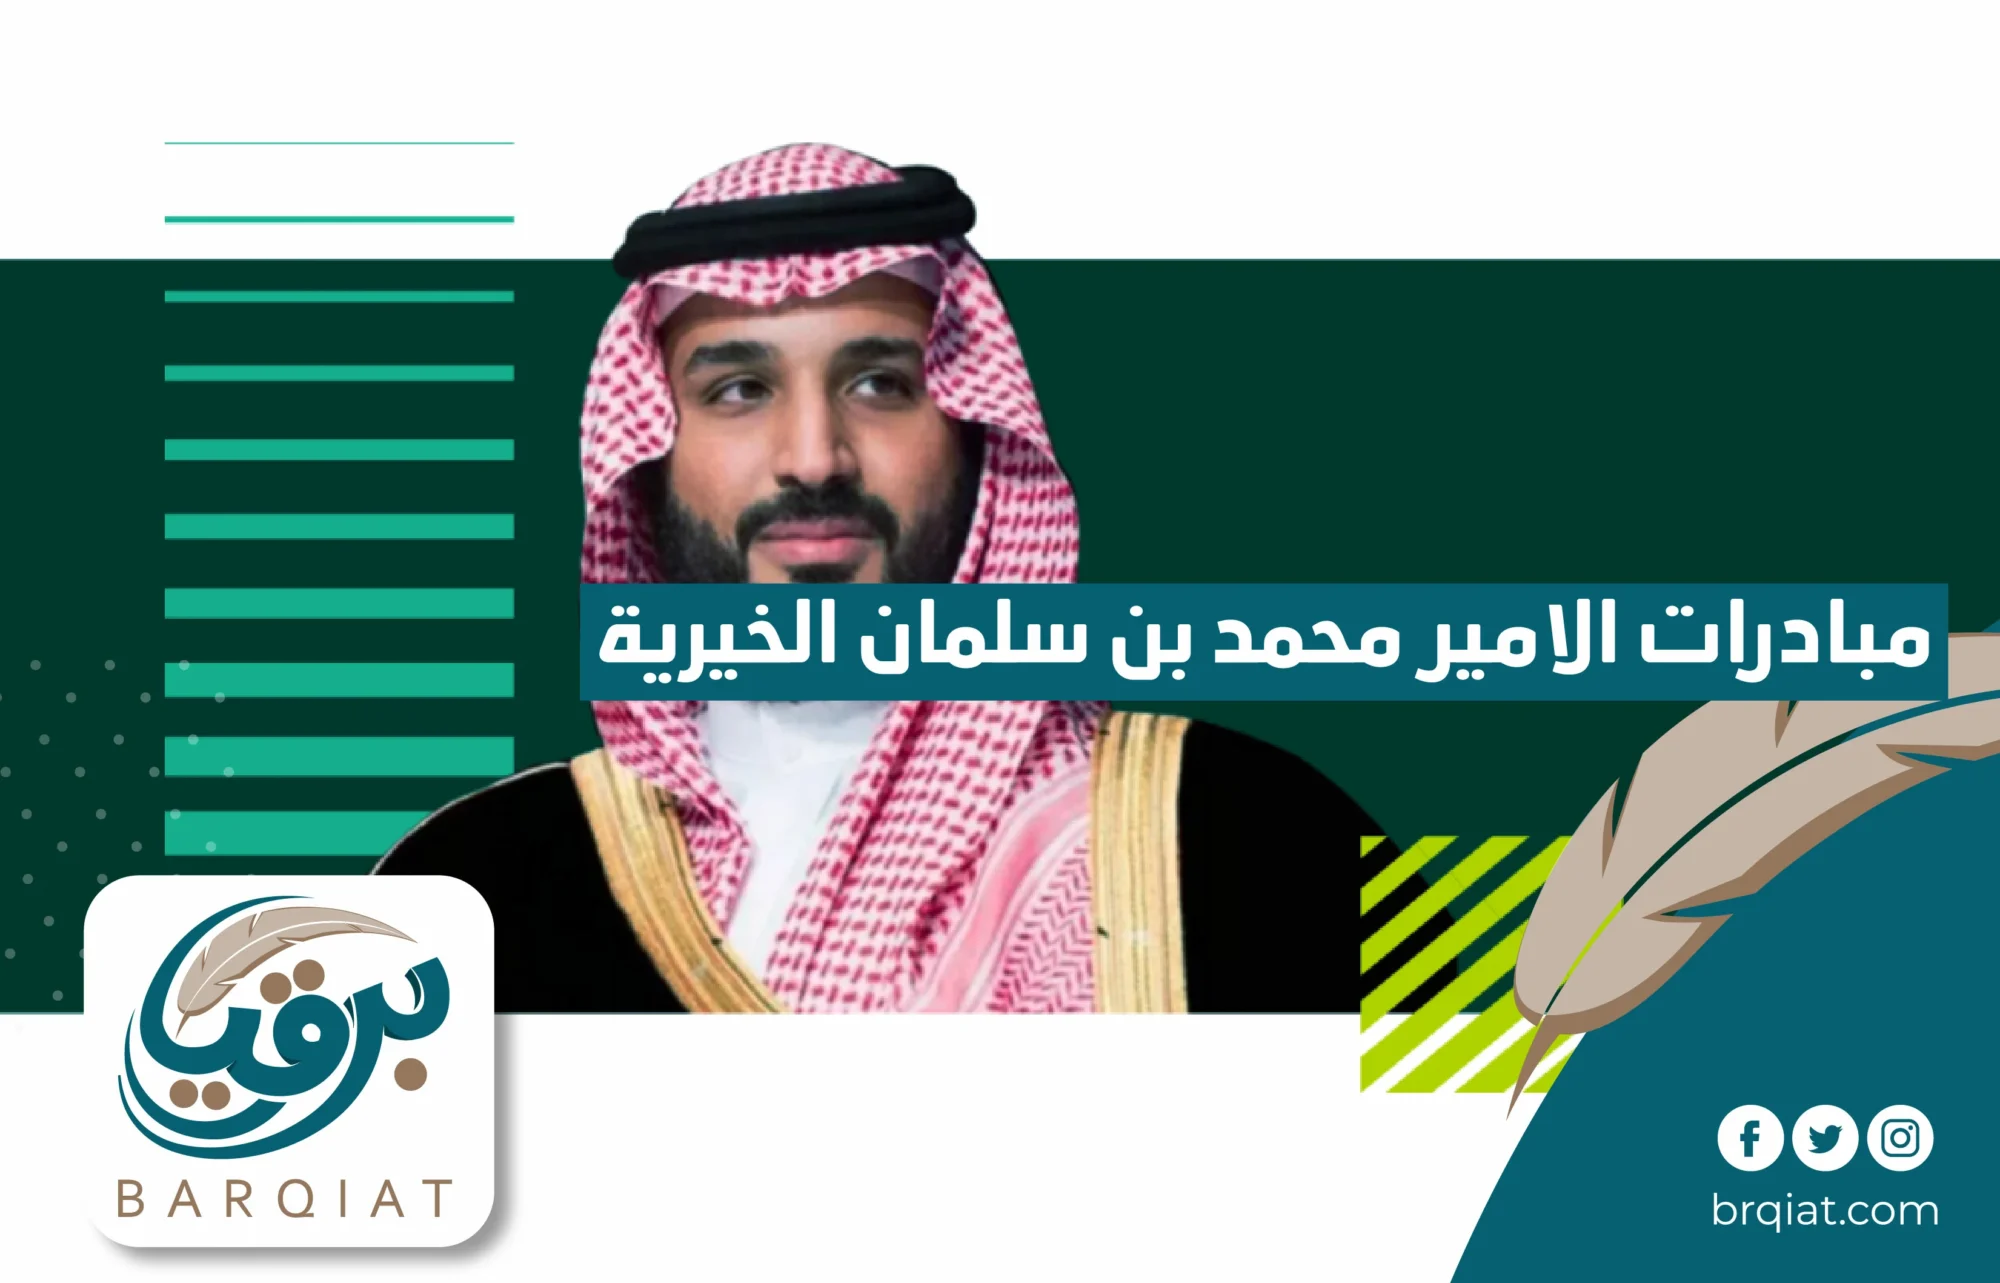 مبادرات الأمير محمد بن سلمان الخيرية